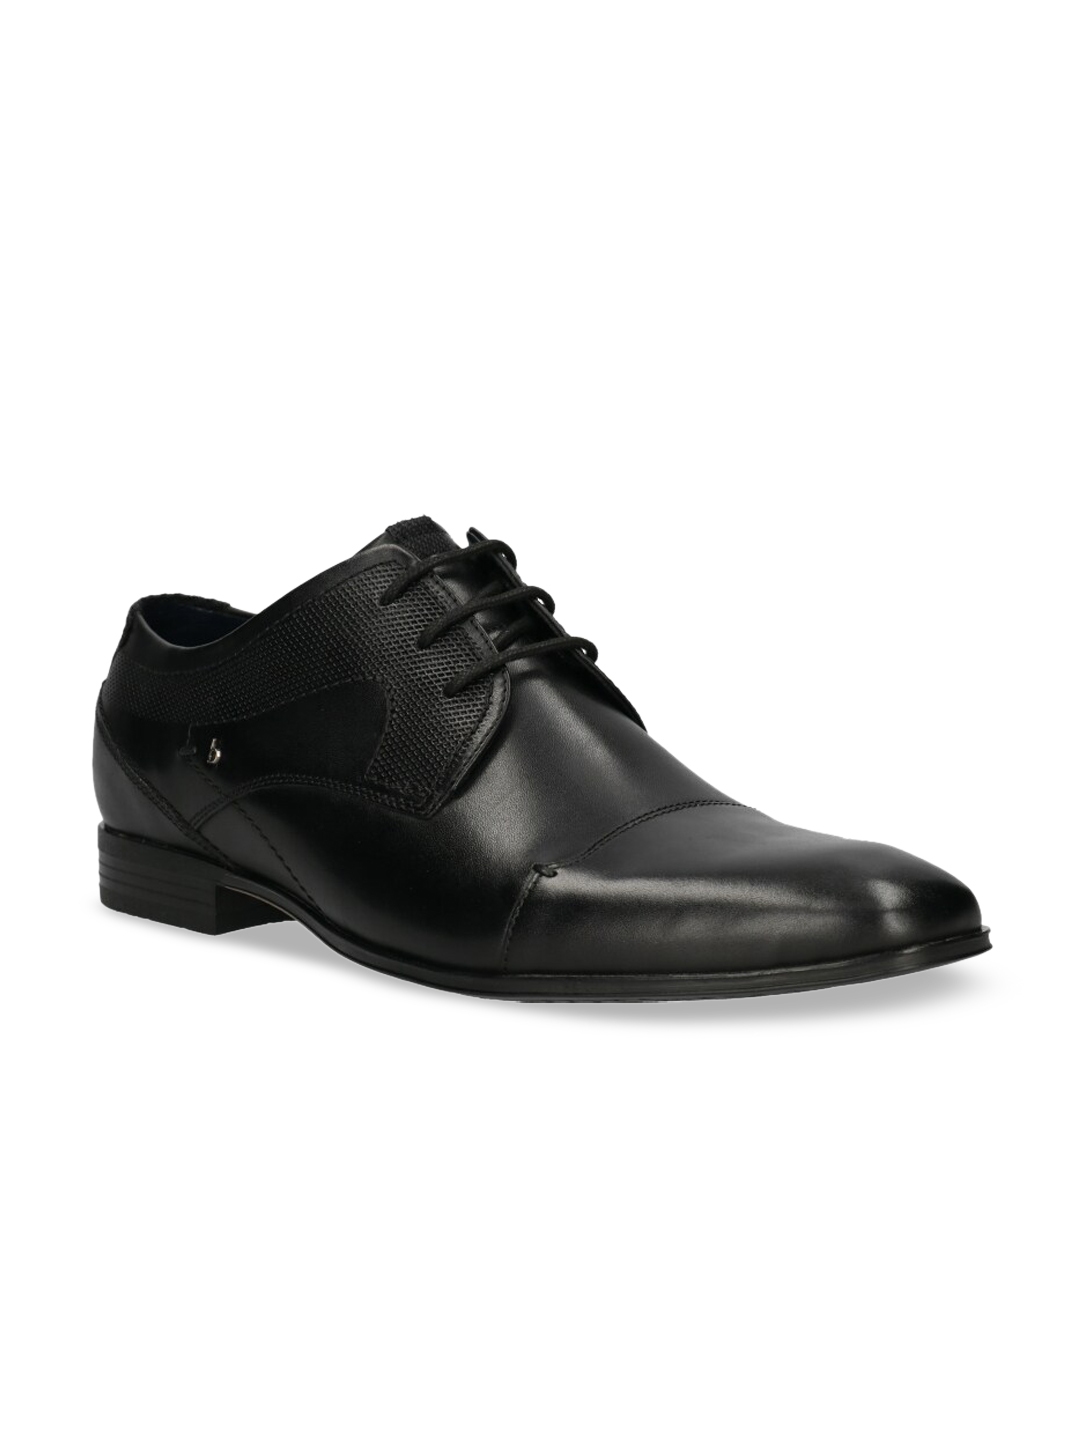 Buy Bugatti Men Black Solid Leather Formal Derbys - Formal Shoes for ...